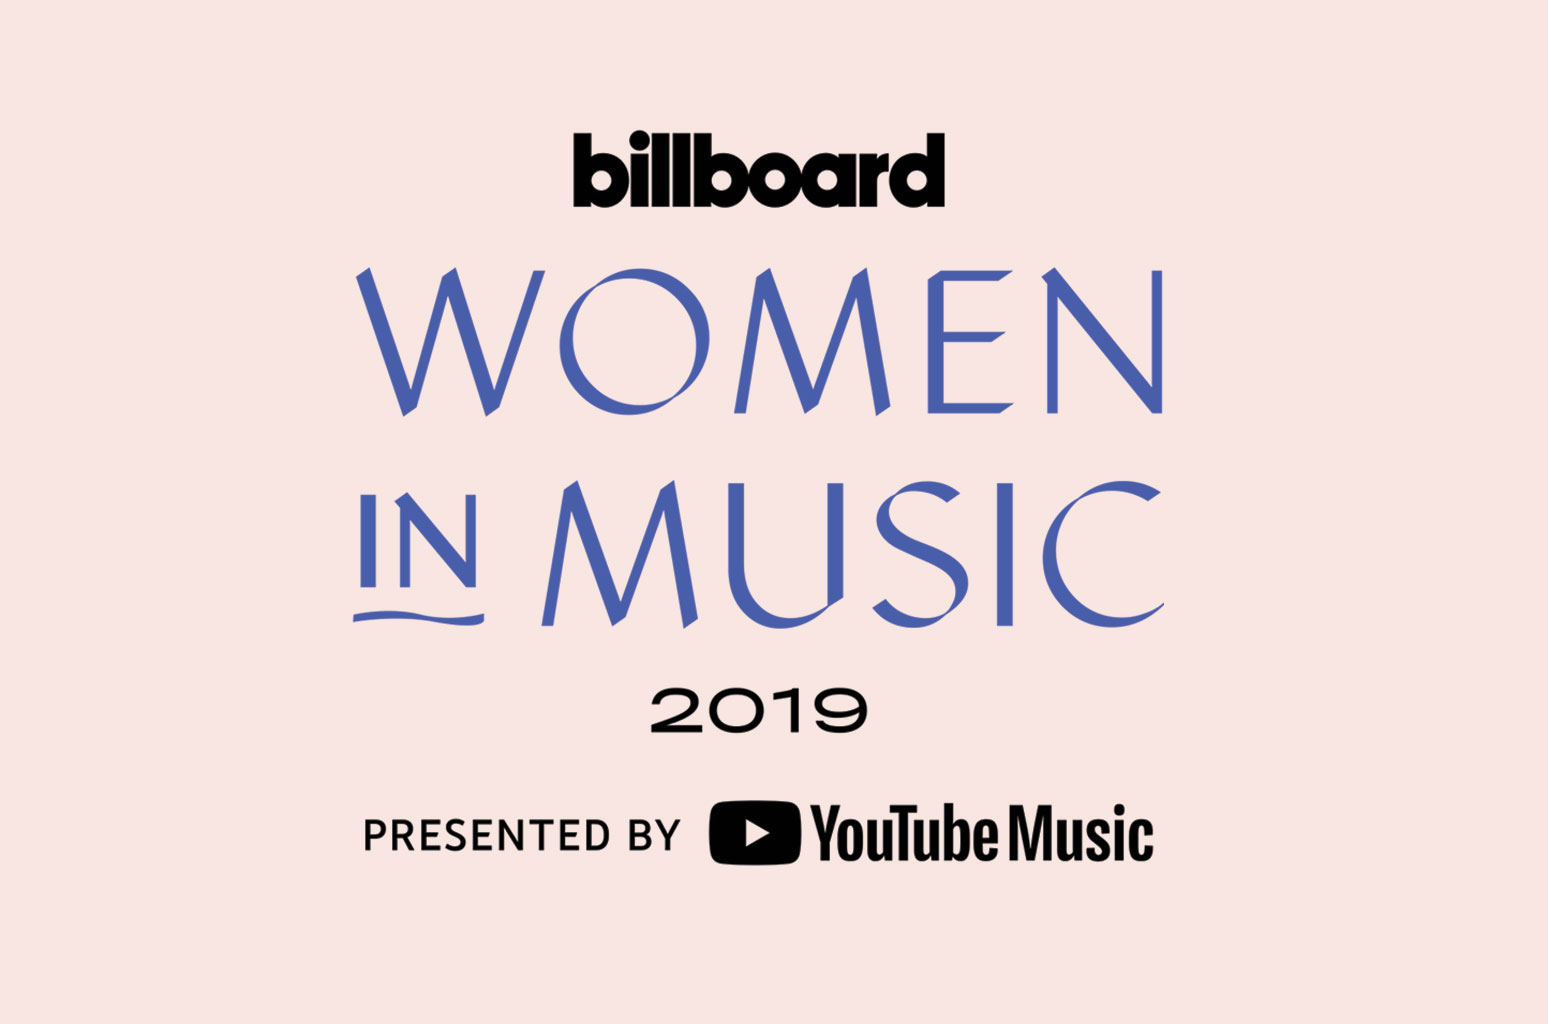 Watch the Billboard Women in Music Live Stream - www.billboard.com